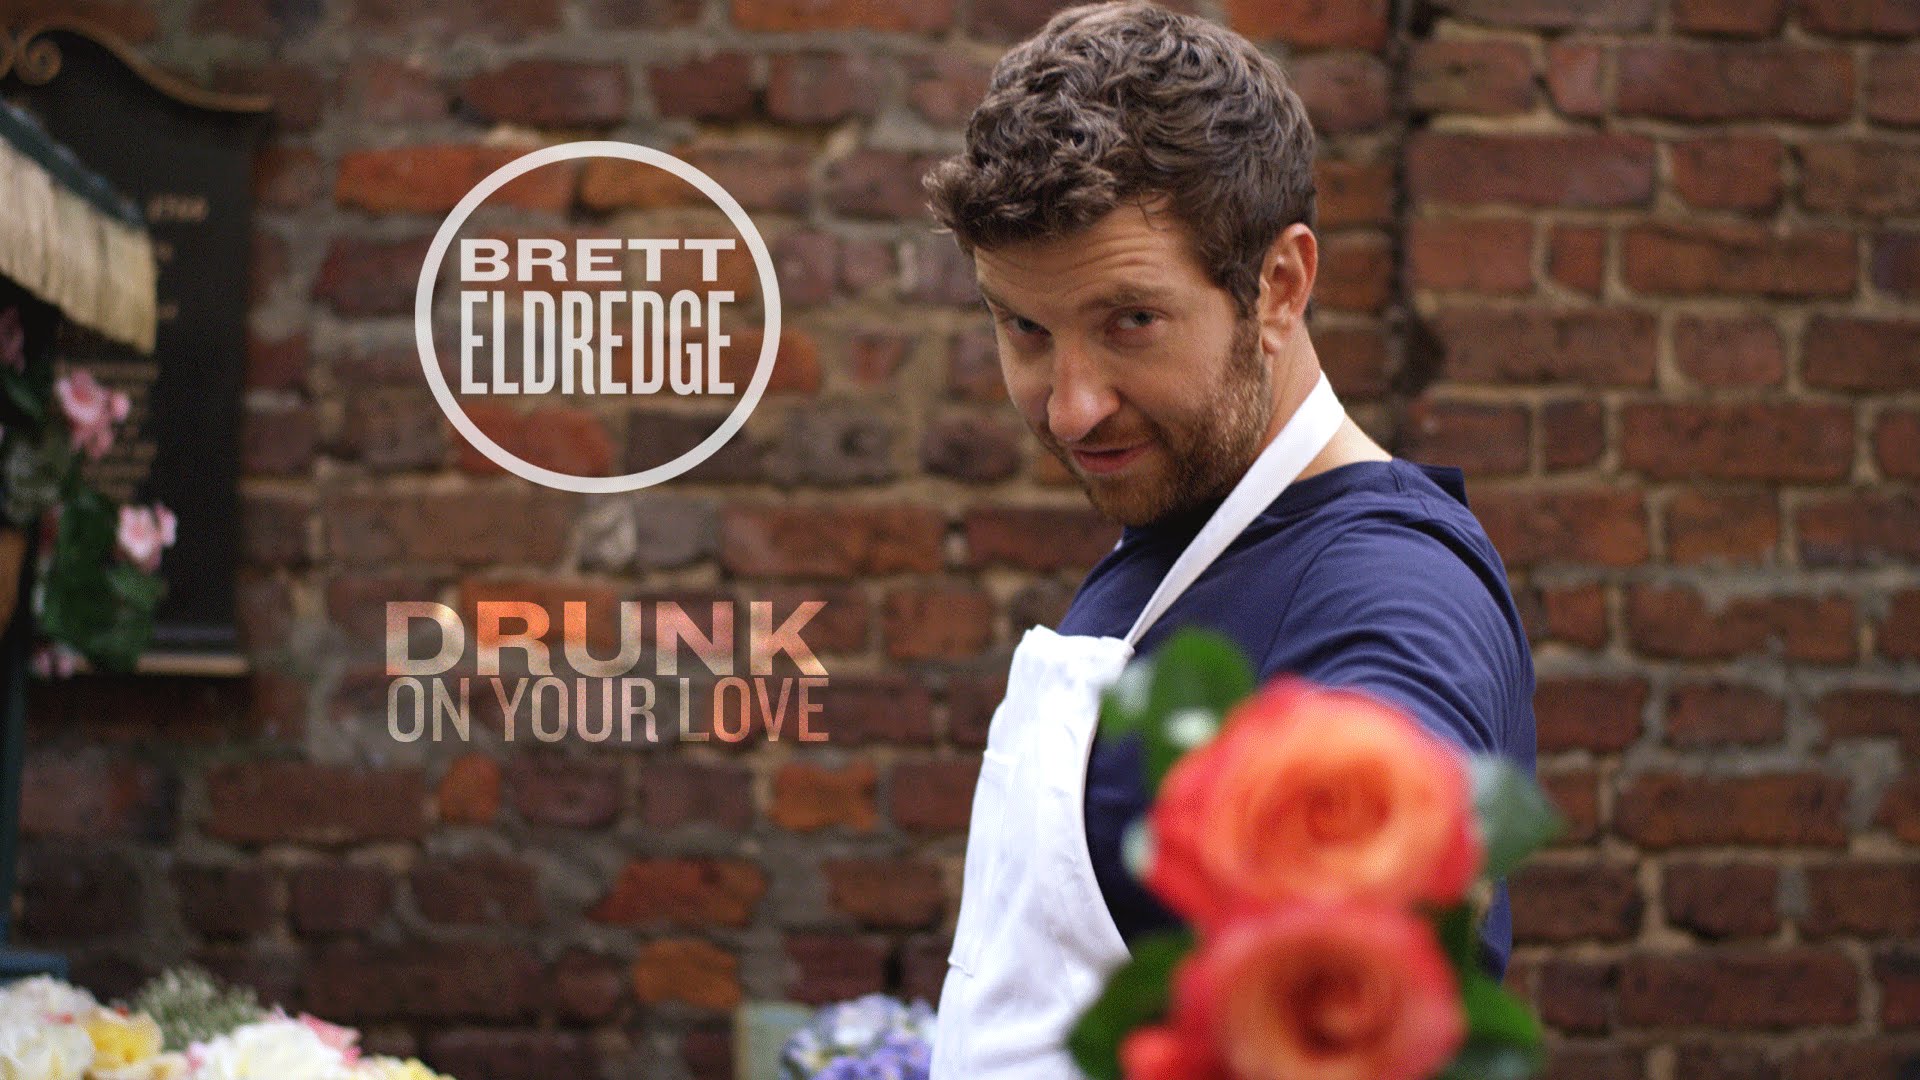 Brett Eldredge Drunk On Your Love